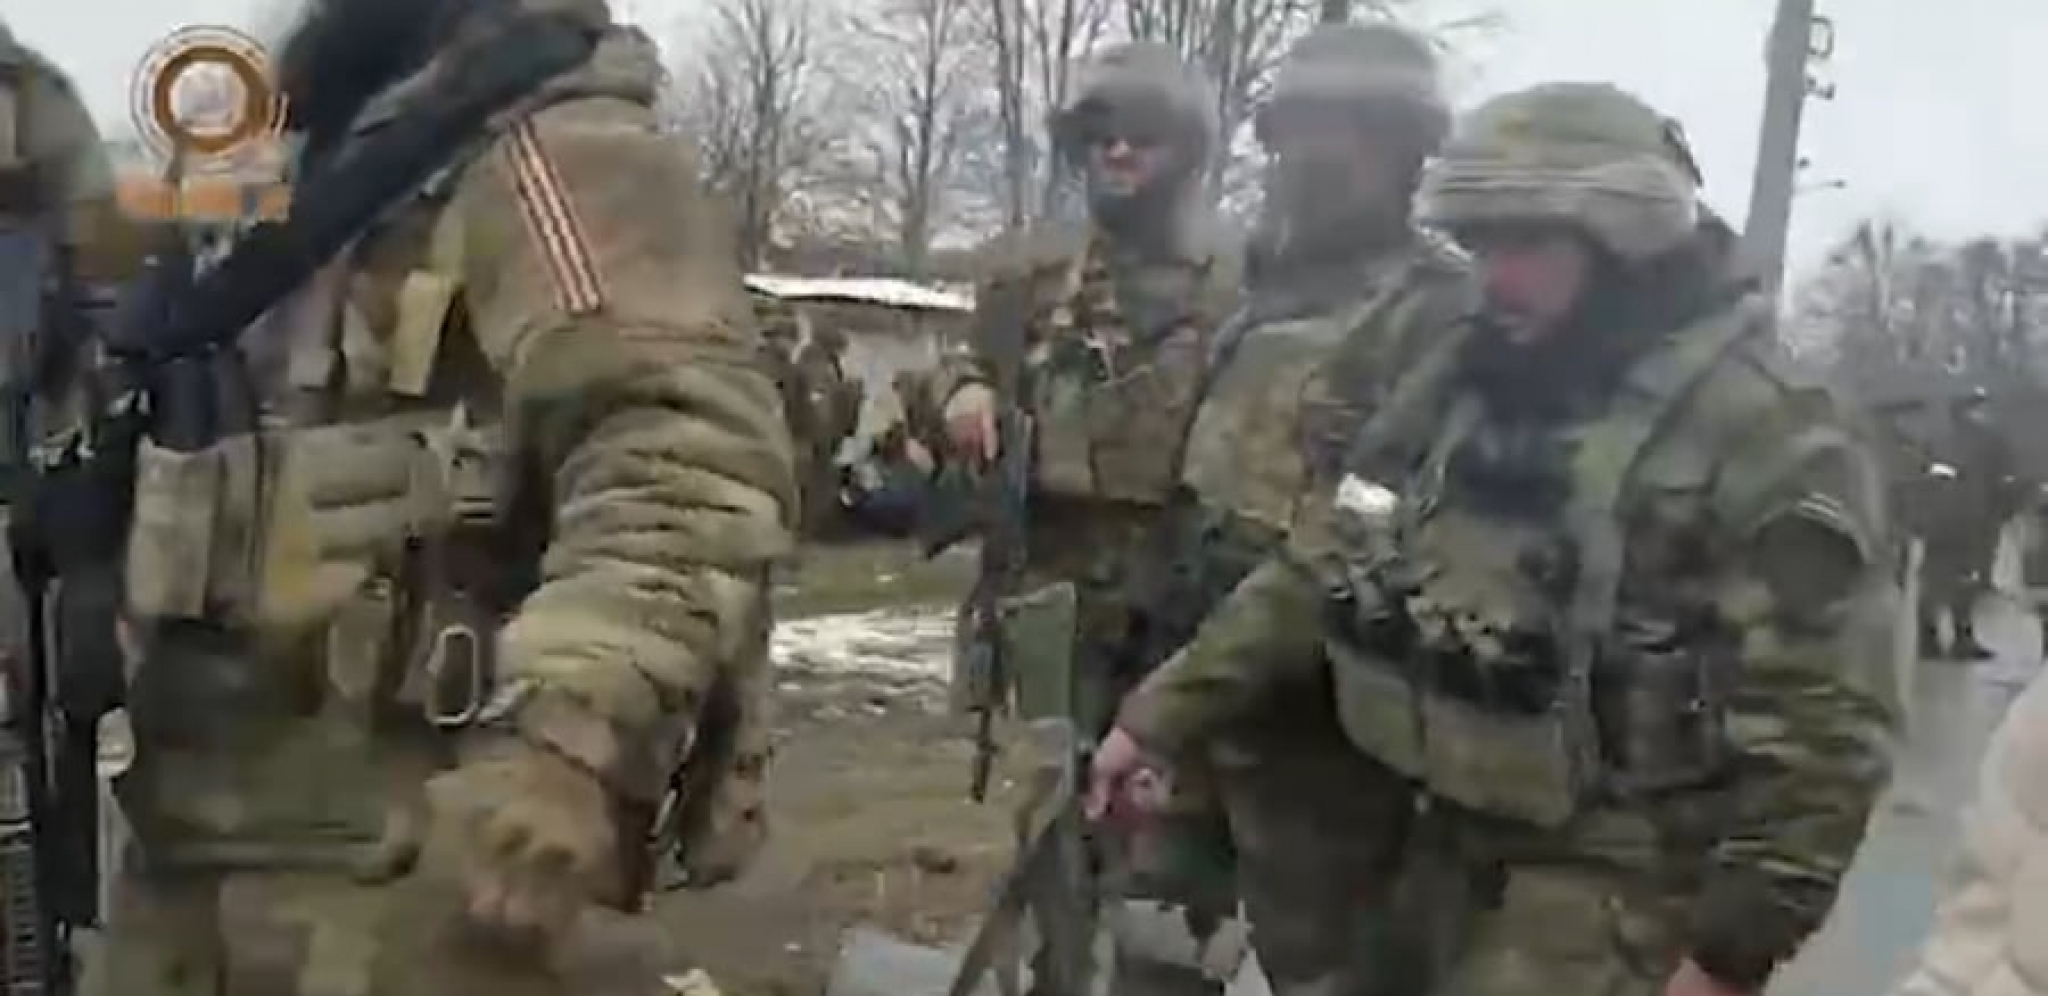 AKO RUSI NAPADNU ODAVDE, TO JE KRAJ Kontigent vojske čeka u pripravnosti, spremni da zabiju NOŽ U LEĐA Ukrajini